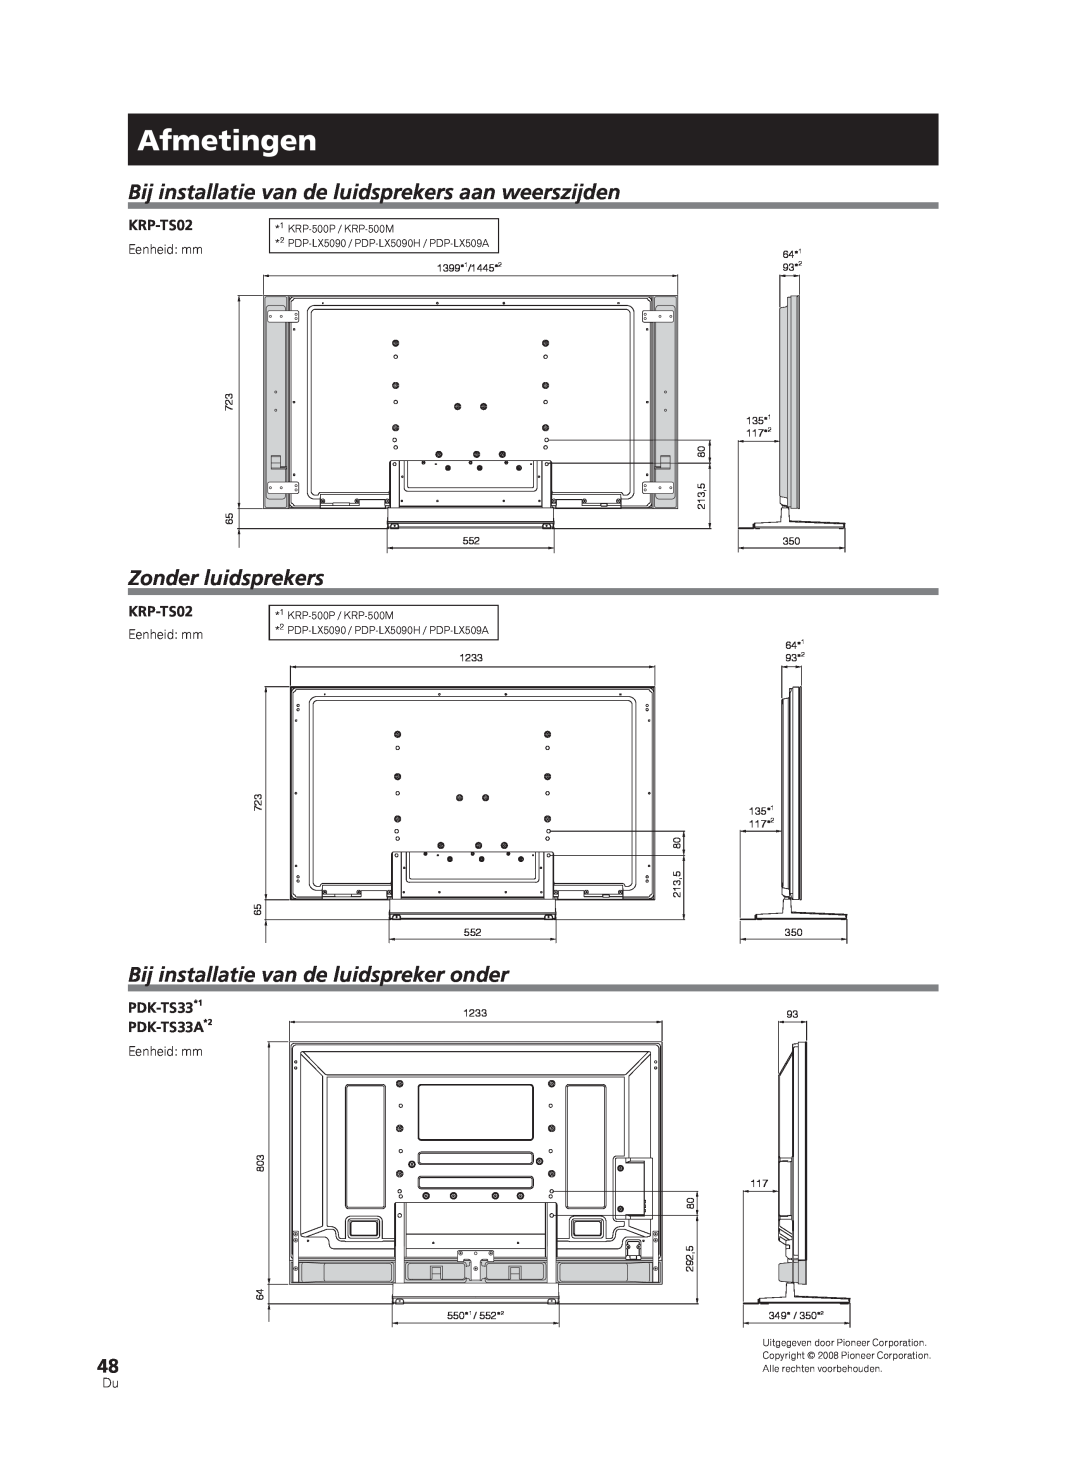 Pioneer PDK-TS33A Afmetingen, Zonder luidsprekers, Bij installatie van de luidspreker onder, Eenheid: mm, 723 65, 1233 552 